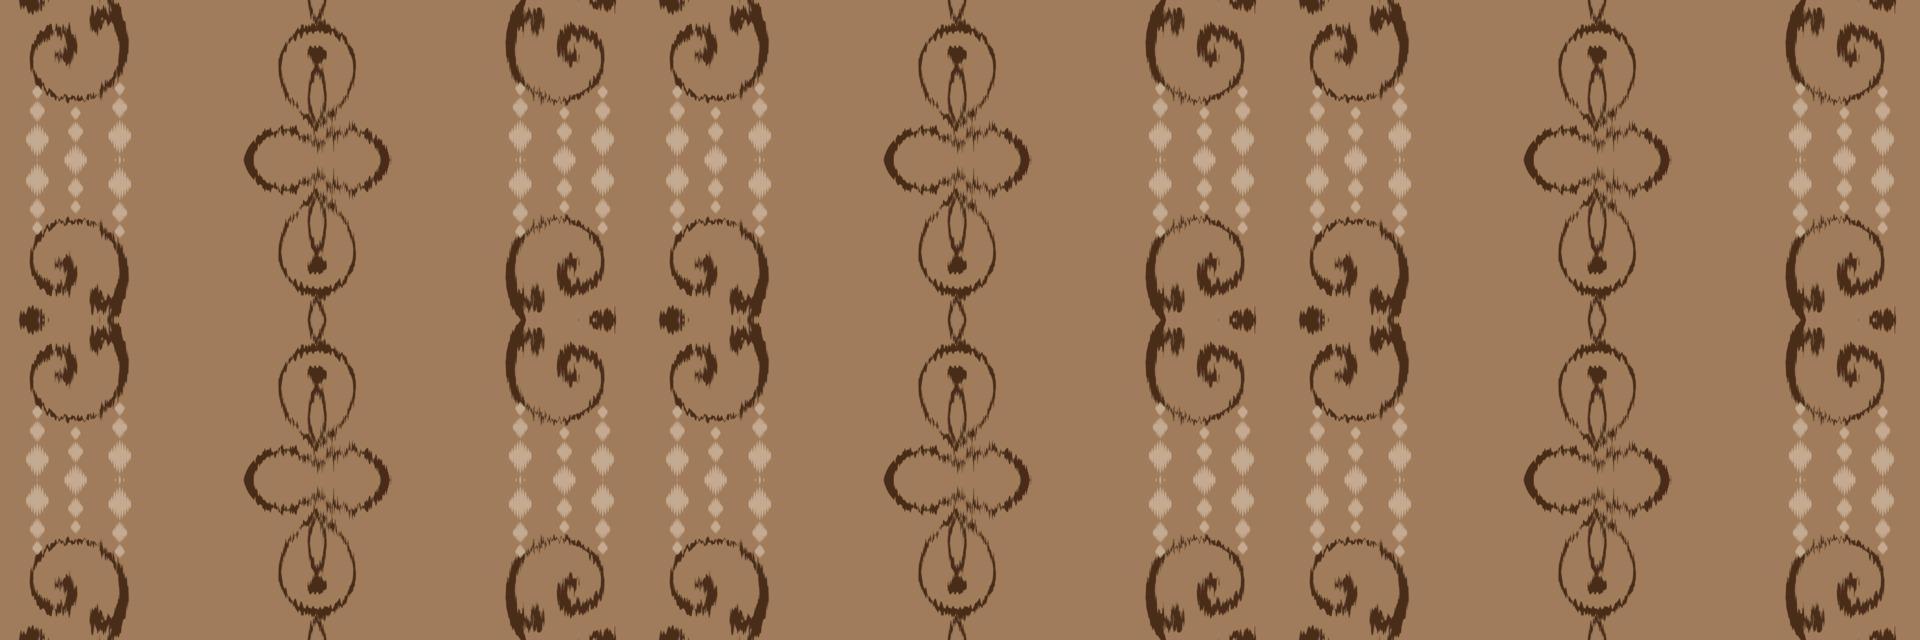 batik têxtil ikkat ou ikat imprime padrão sem costura design de vetor digital para impressão saree kurti borneo tecido borda escova símbolos amostras roupas de festa